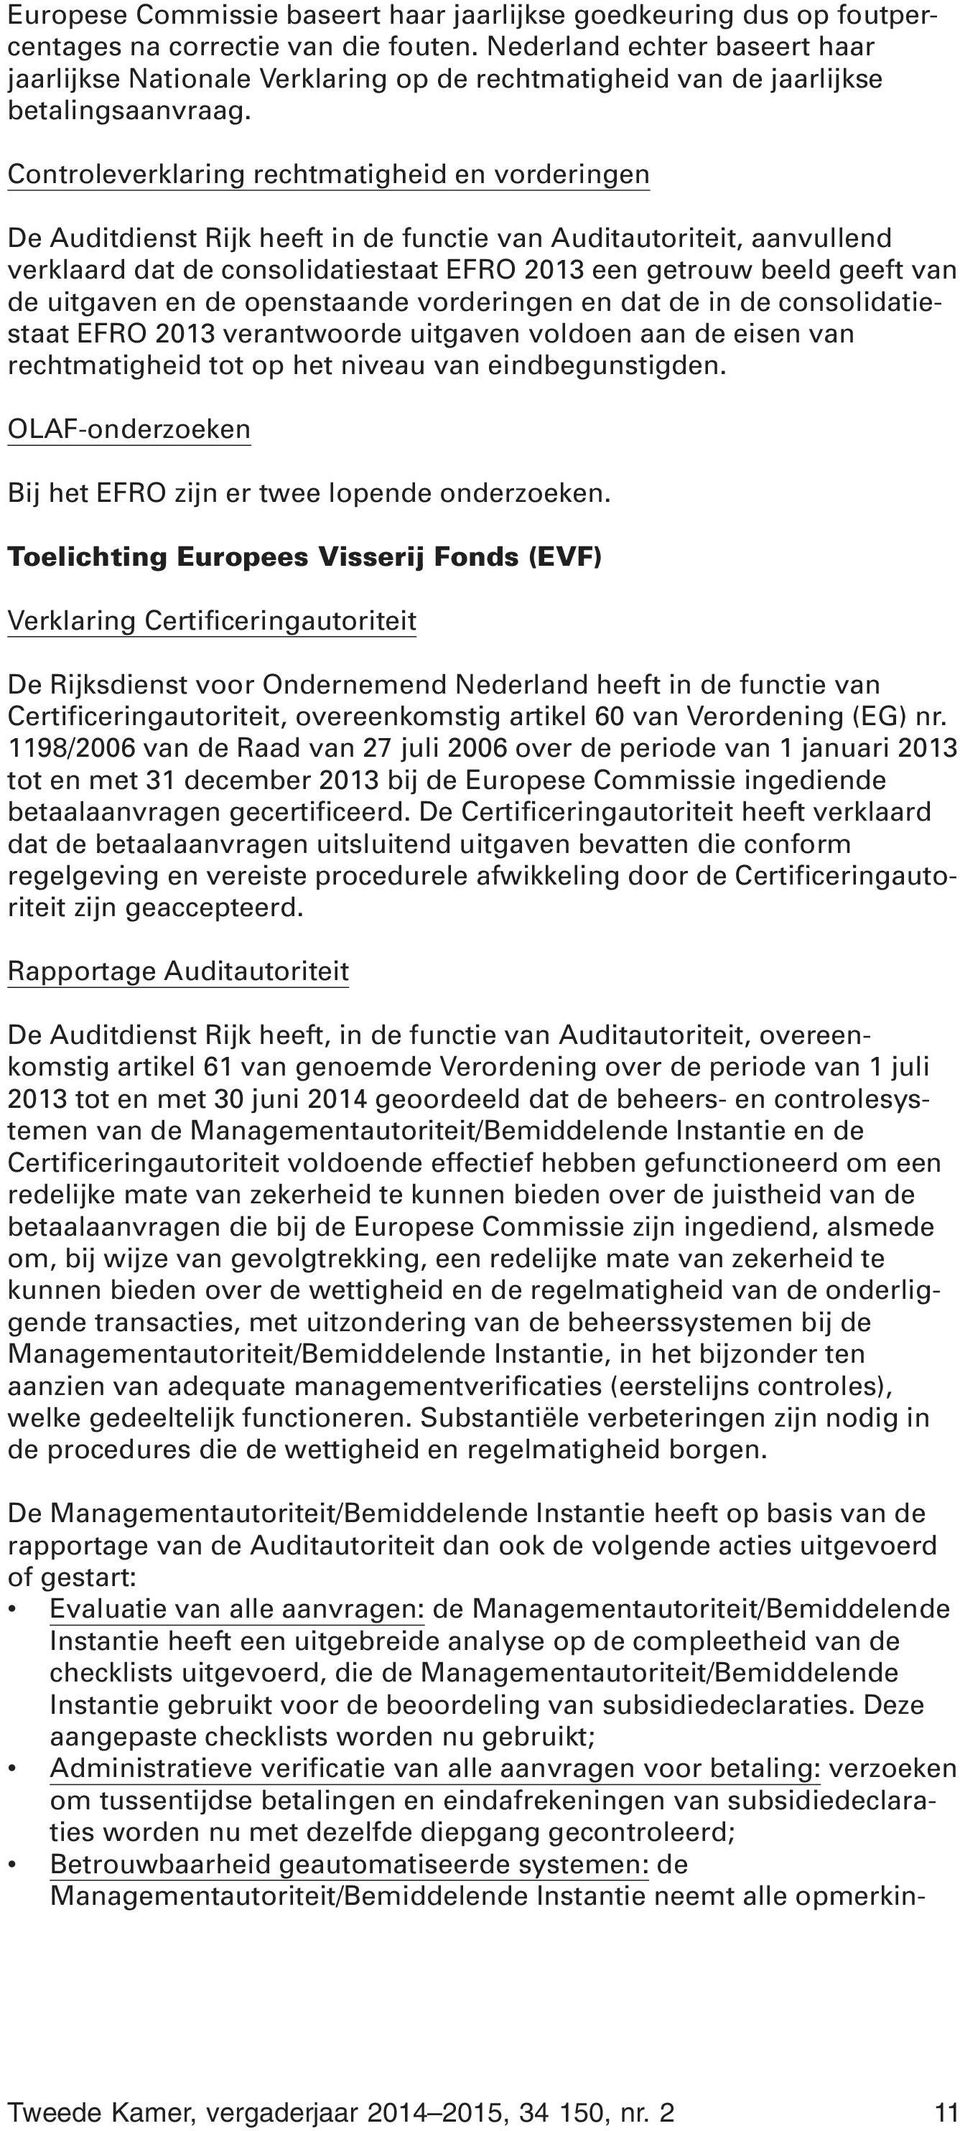 Controleverklaring rechtmatigheid en vorderingen De Auditdienst Rijk heeft in de functie van Auditautoriteit, aanvullend verklaard dat de consolidatiestaat EFRO 2013 een getrouw beeld geeft van de